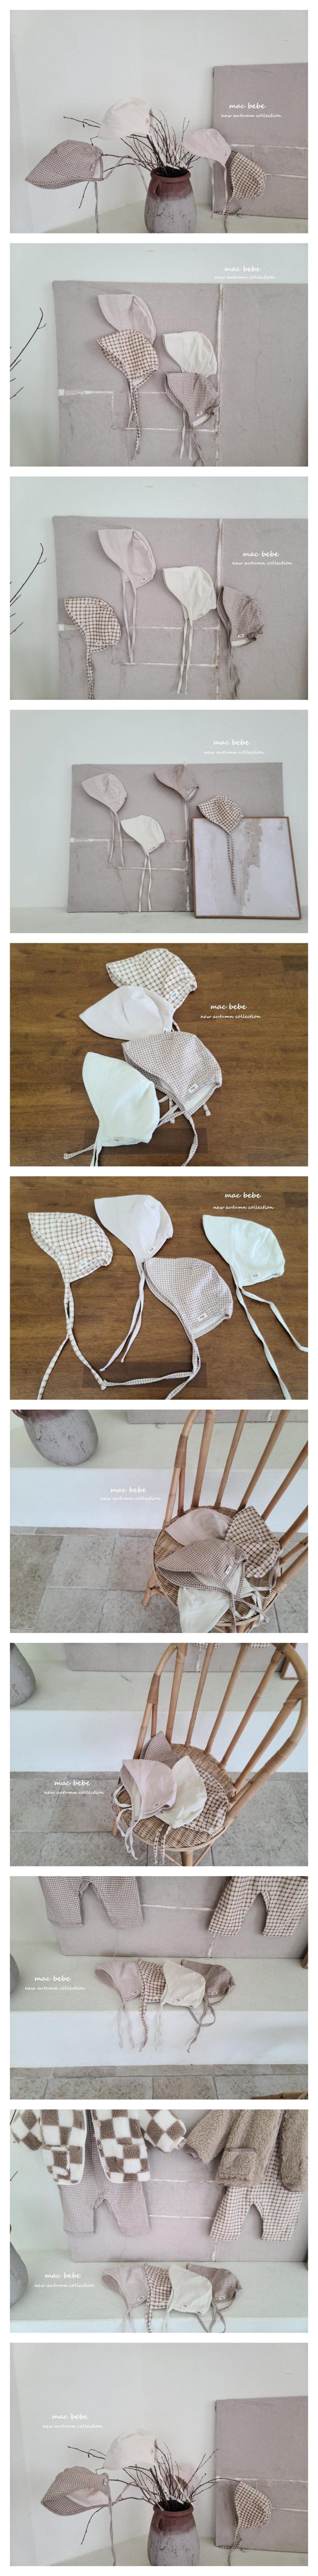 Mac - Korean Baby Fashion - #babyclothing - Chang Bonnet